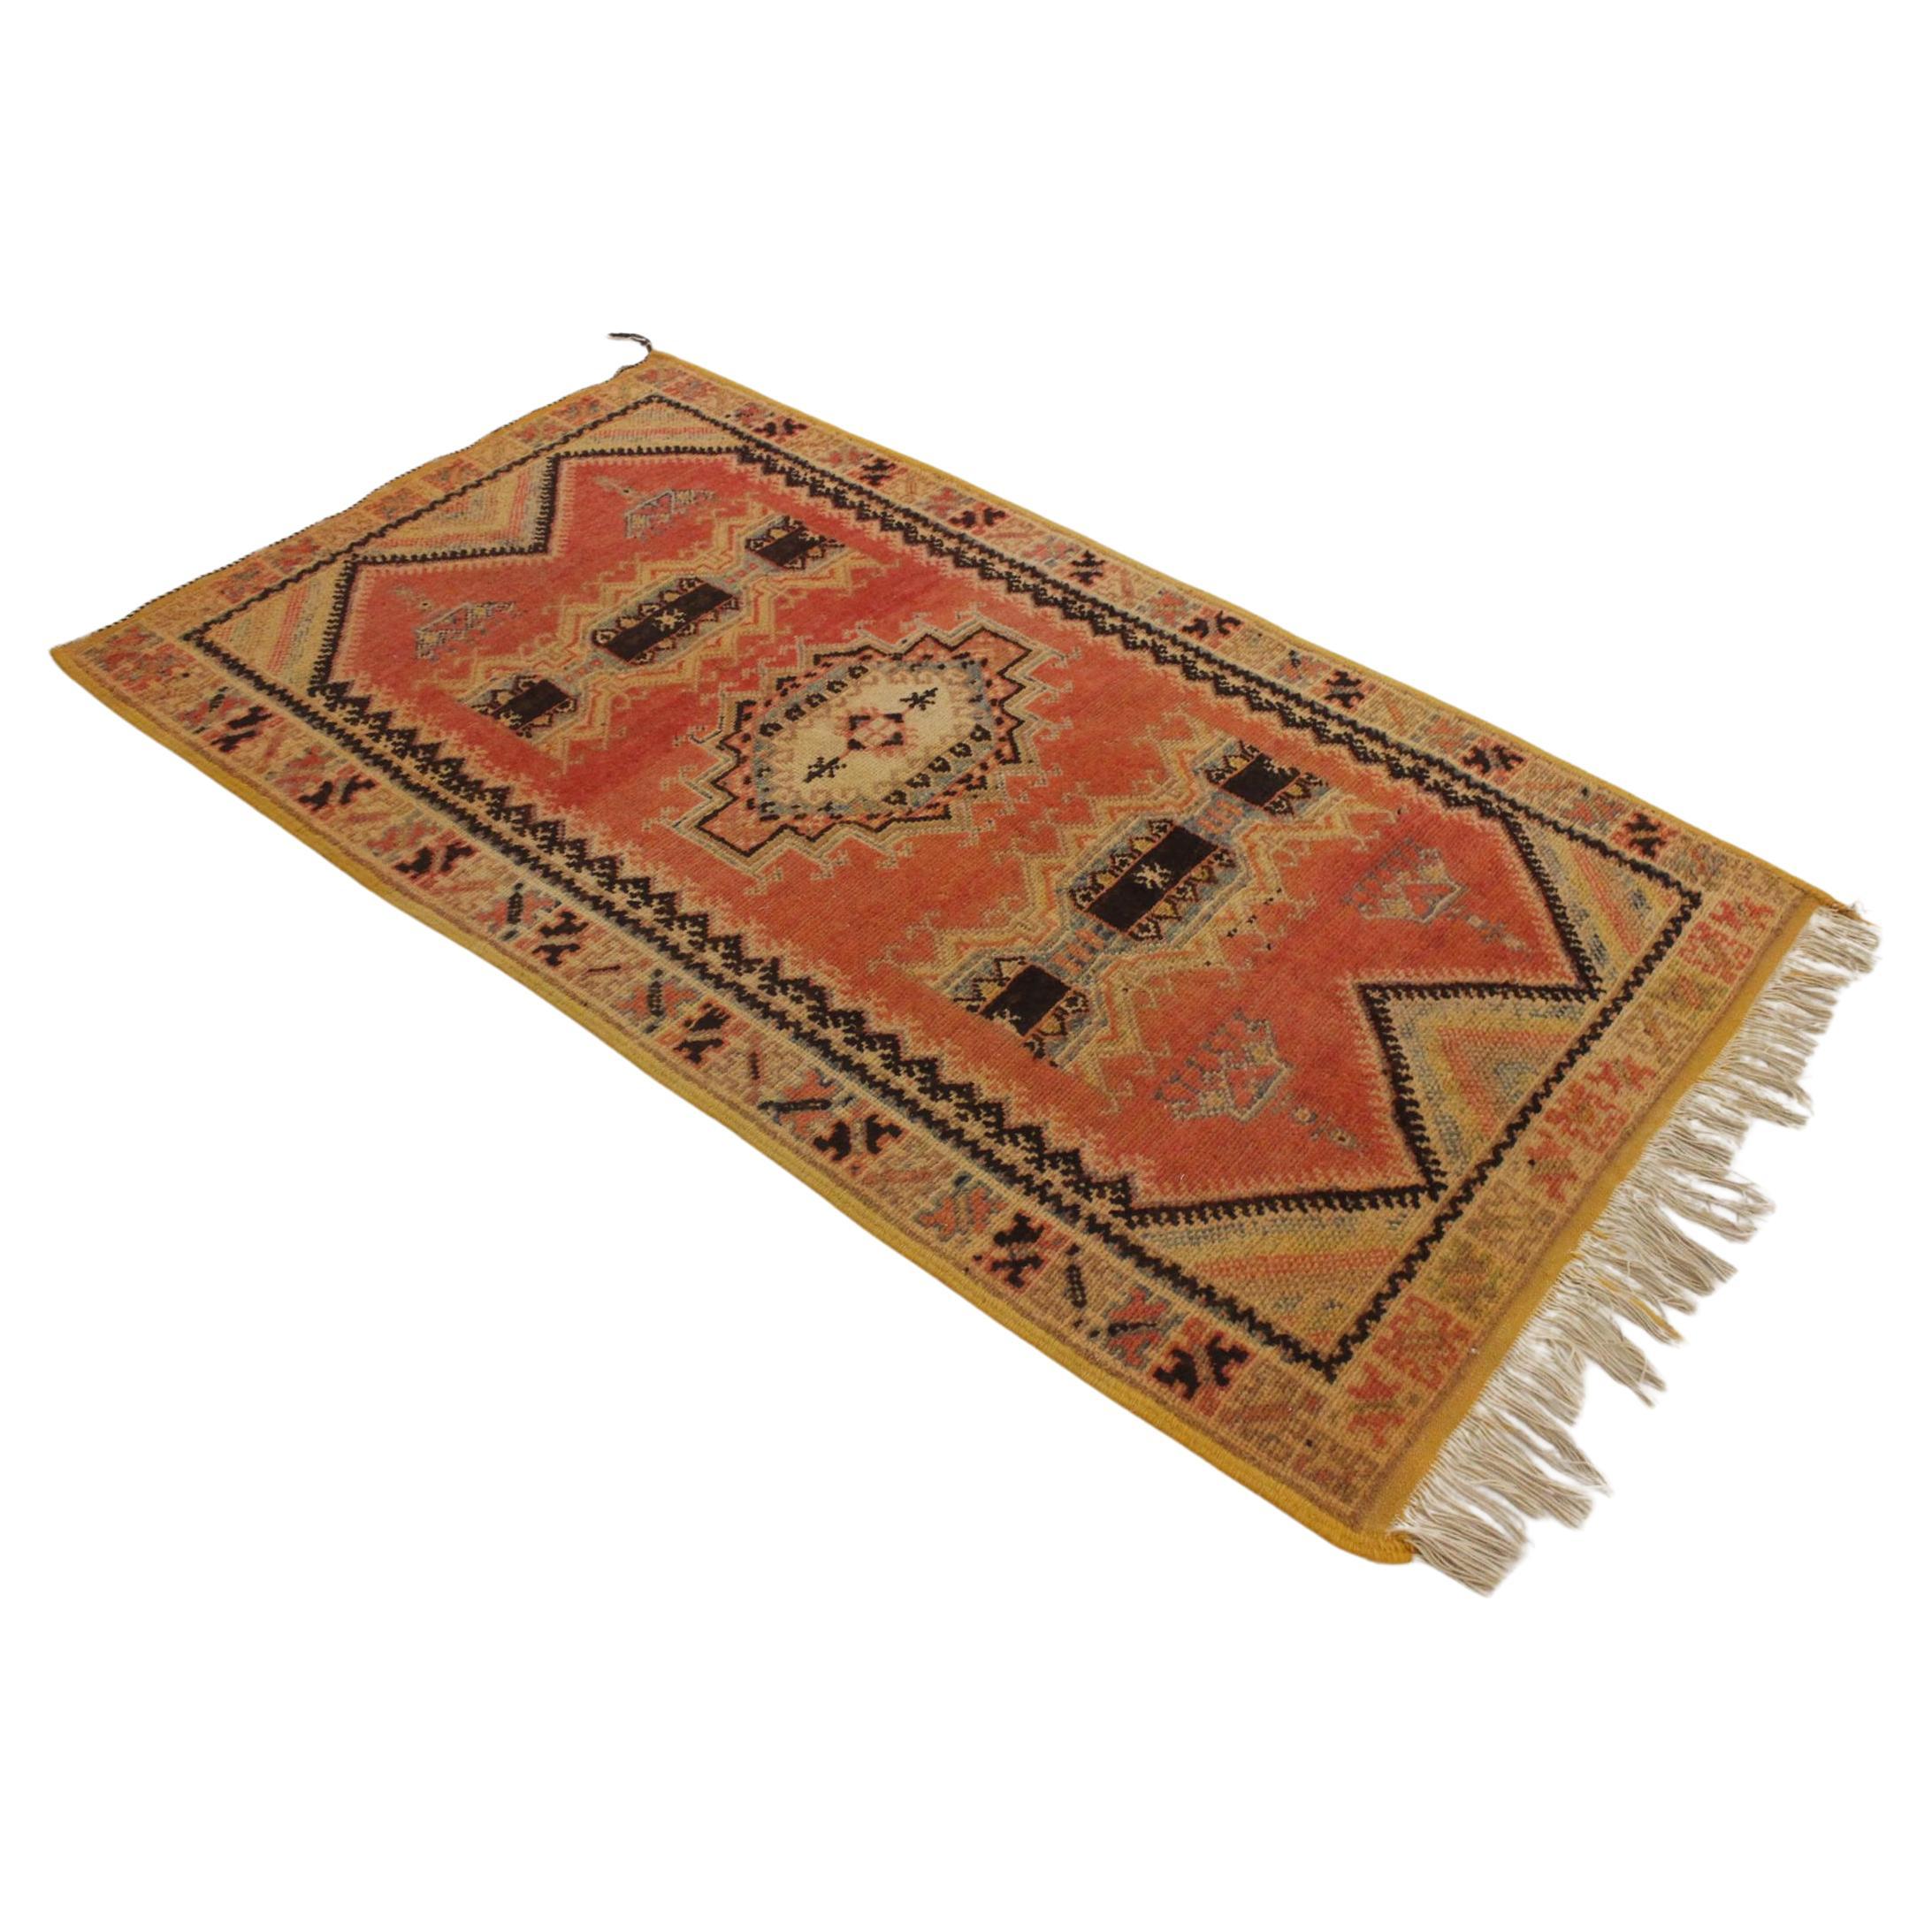 Vintage Moroccan Taznakht rug - Blood orange/black - 3.2x5.8feet / 100x178cm For Sale